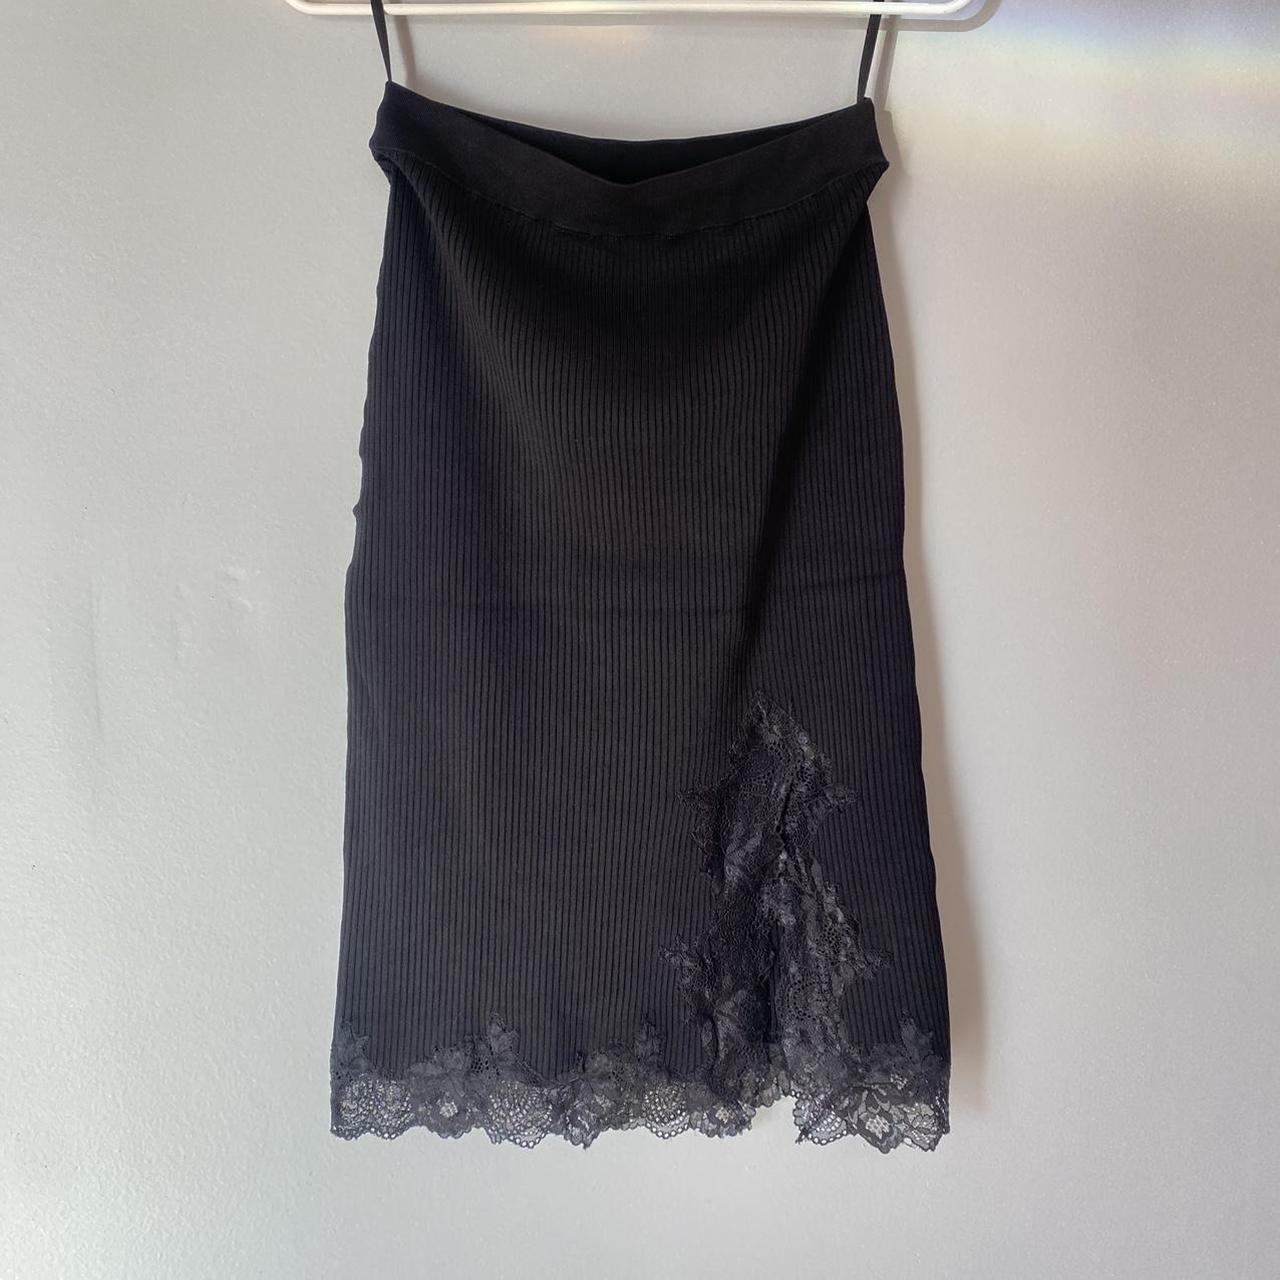 Bebe Women's Black Skirt | Depop